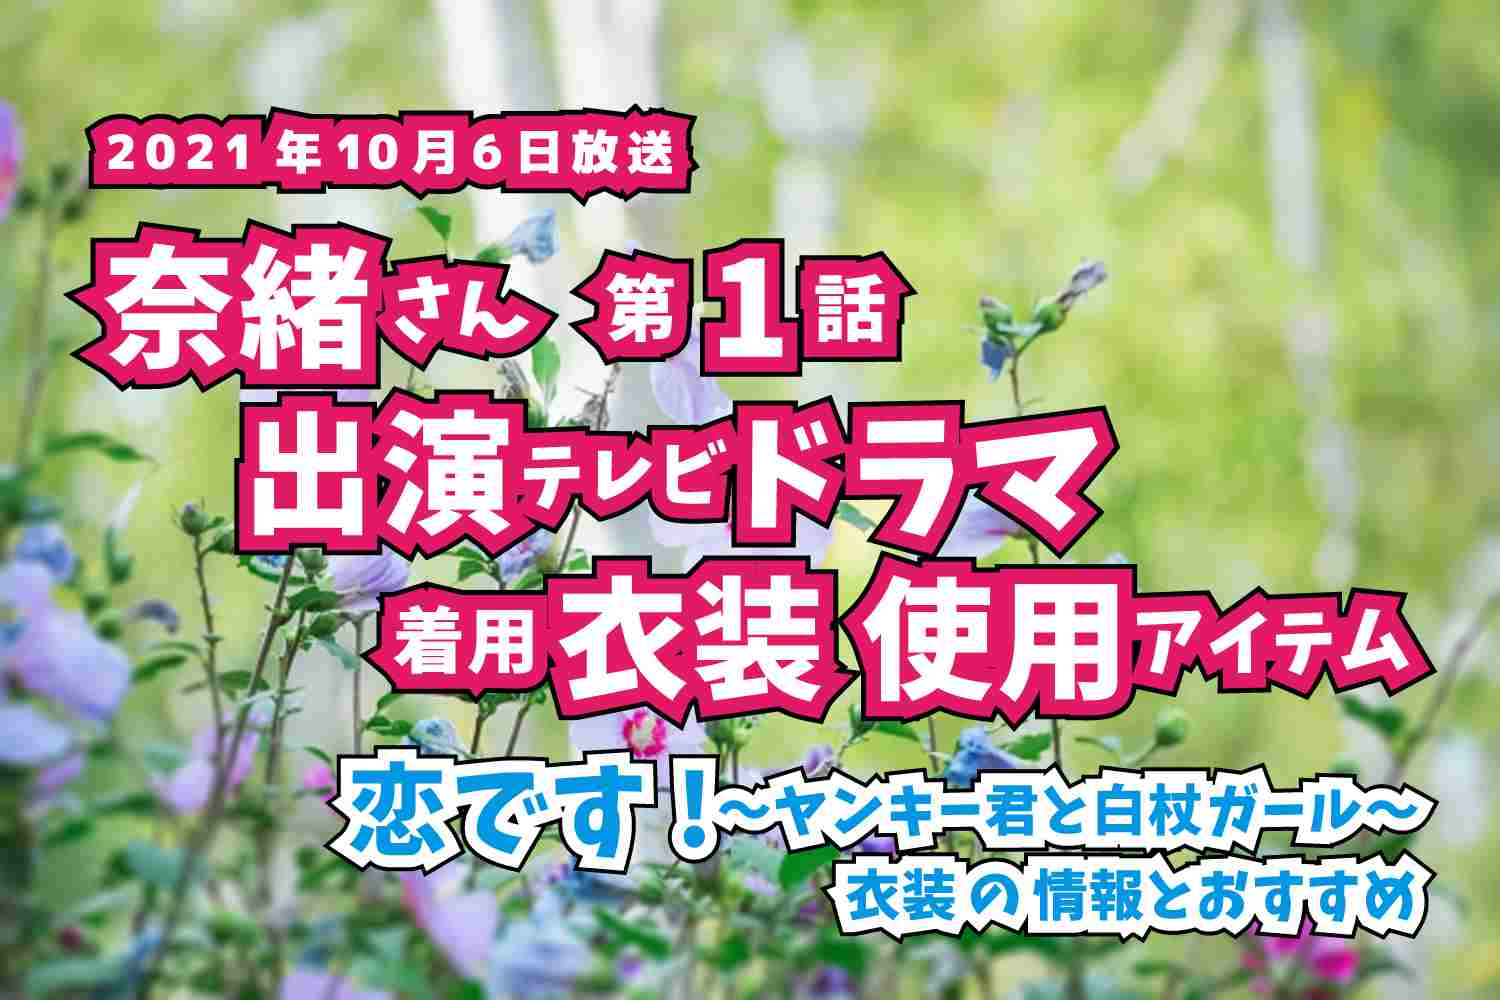 恋です!〜ヤンキー君と白杖ガール〜　奈緒さん　ドラマ　衣装　2021年10月6日放送